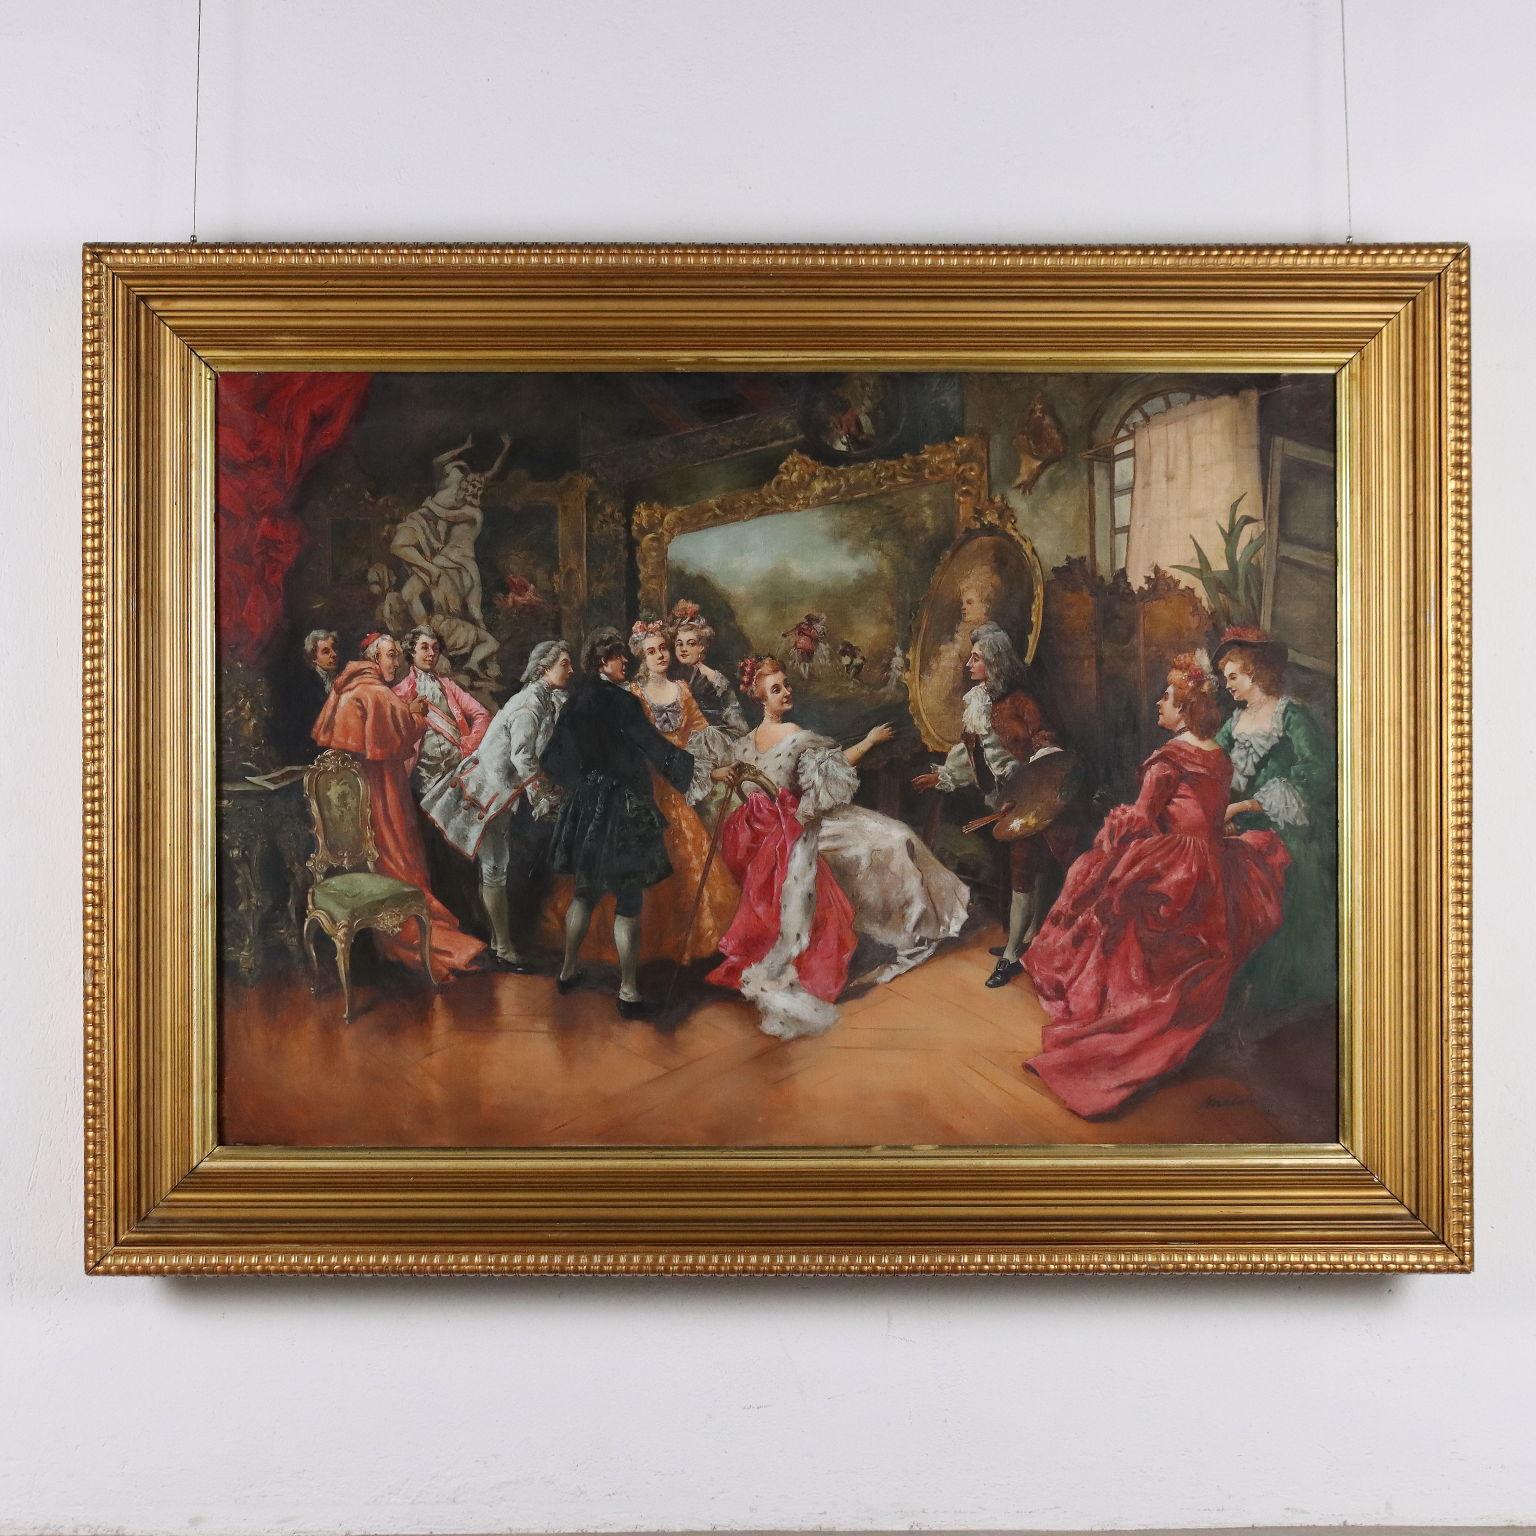 Dipinto con Scena di Genere, Il Ritratto della Regina, XX sec. - Painting by Unknown